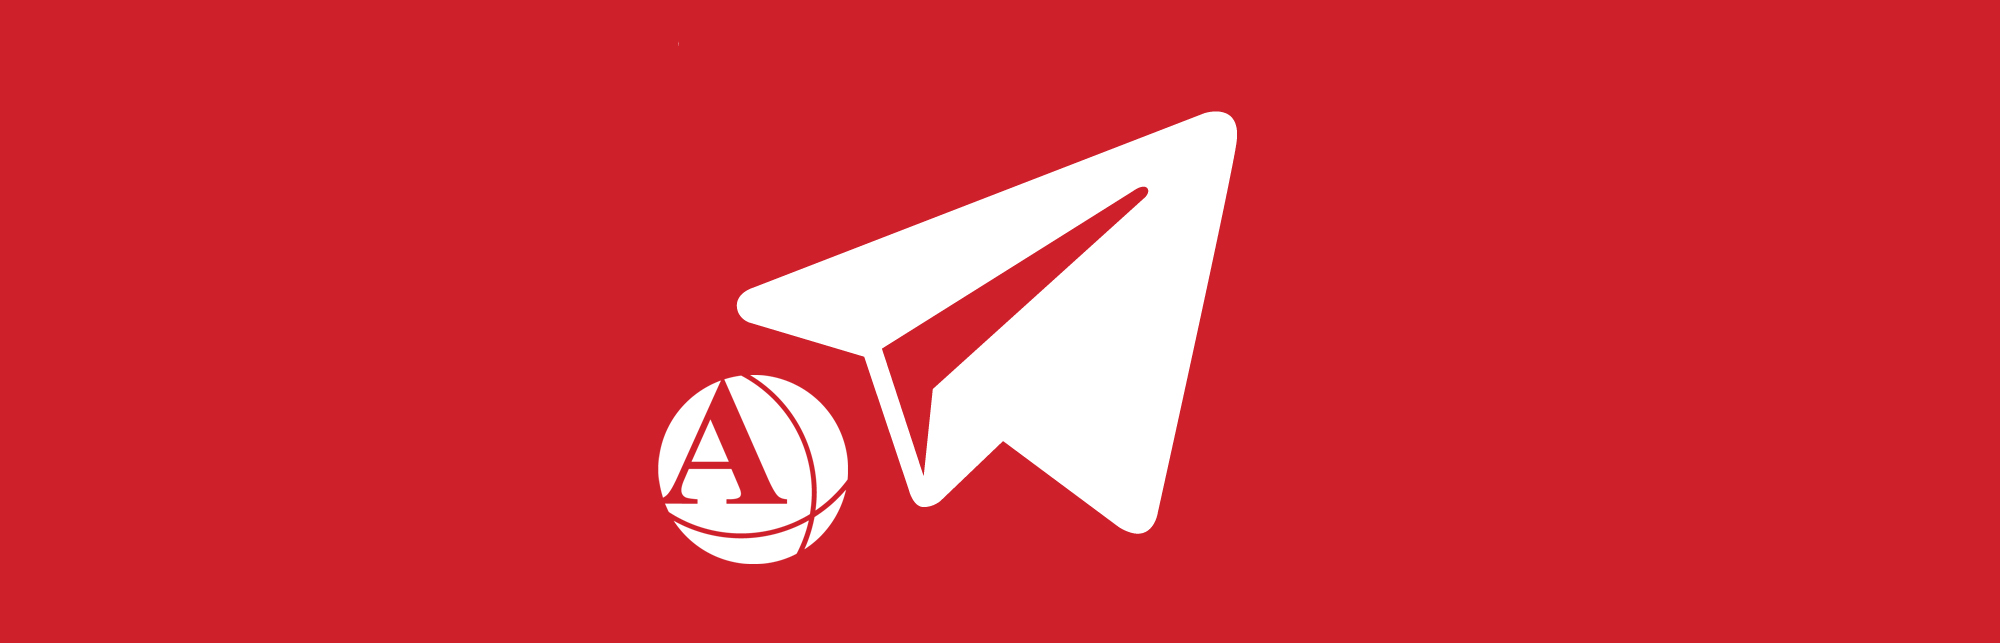 Telegram, nuovo canale AiFOS per aggiornamenti in tempo reale